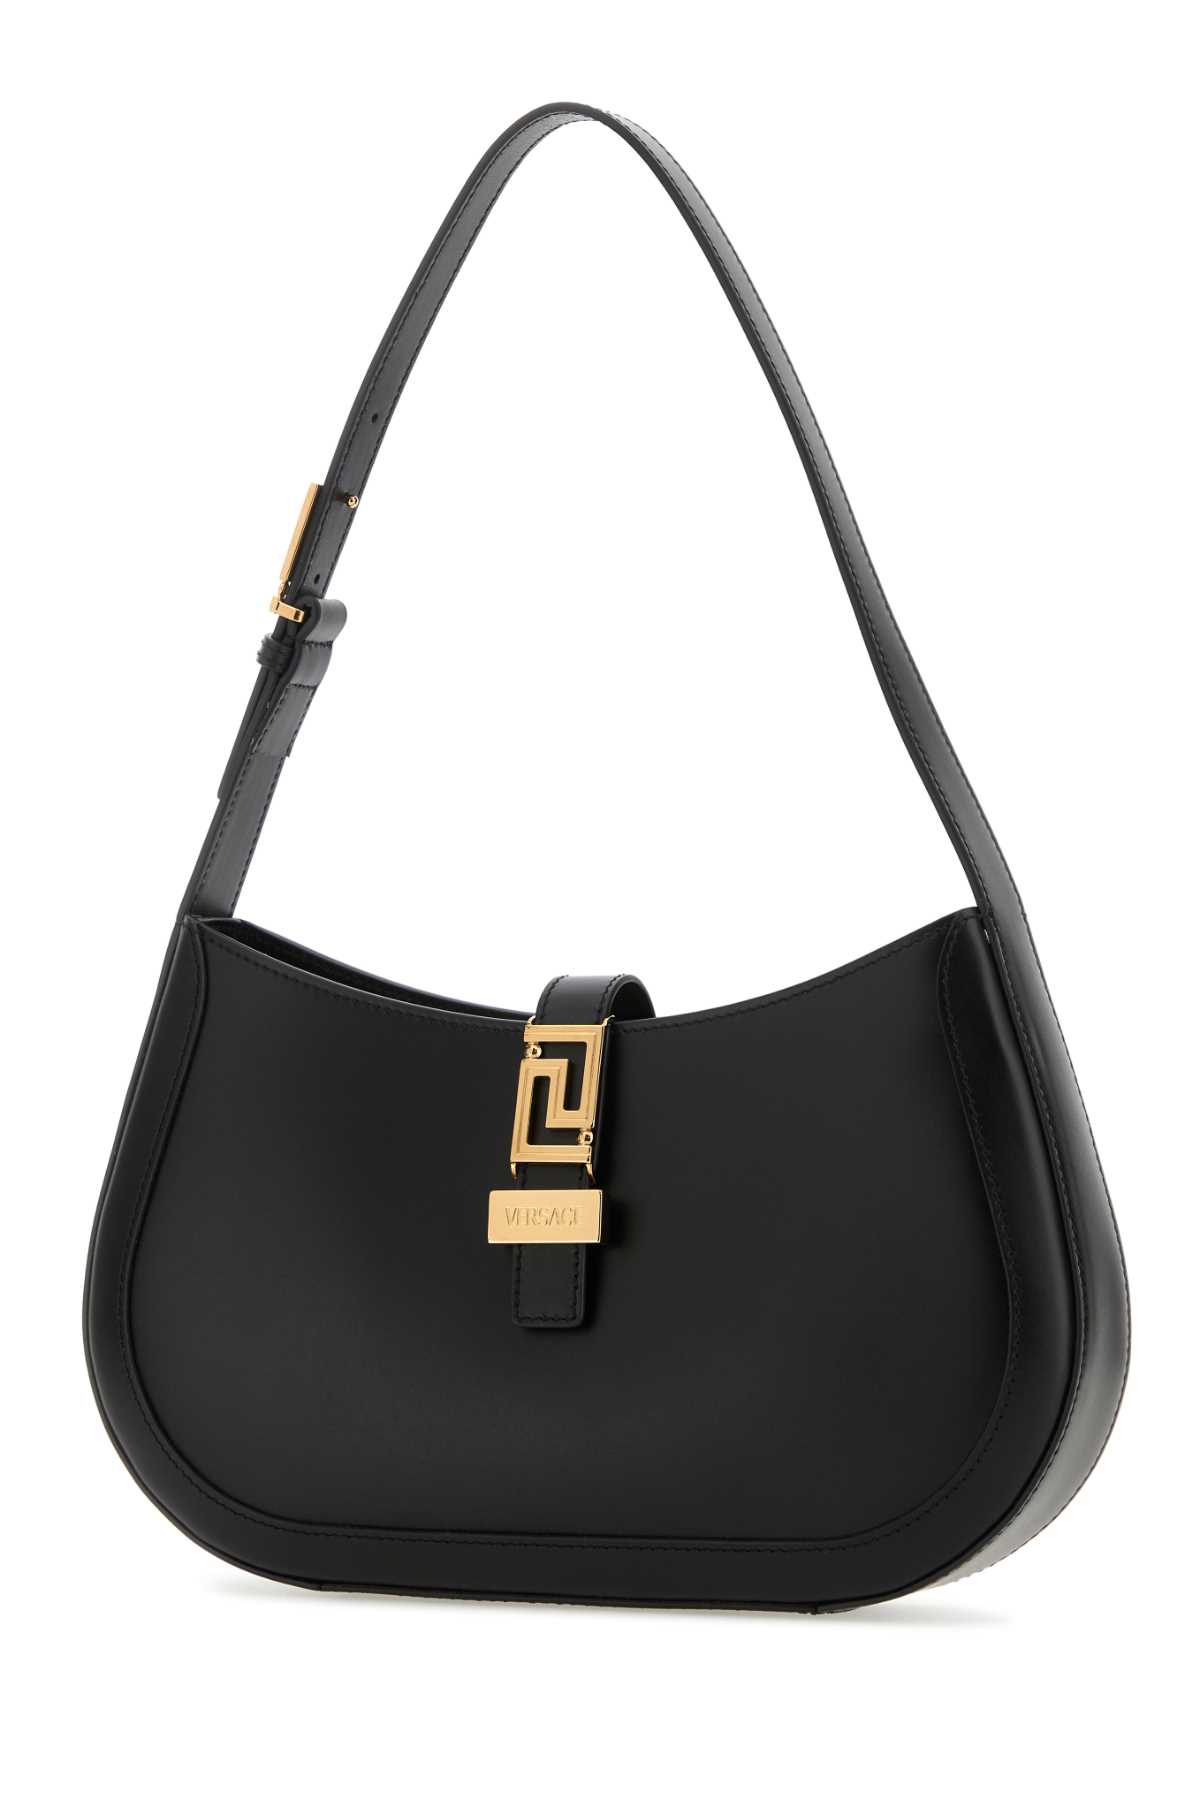 Versace Black Leather Greca Goddess Shoulder Bag In Blackgold